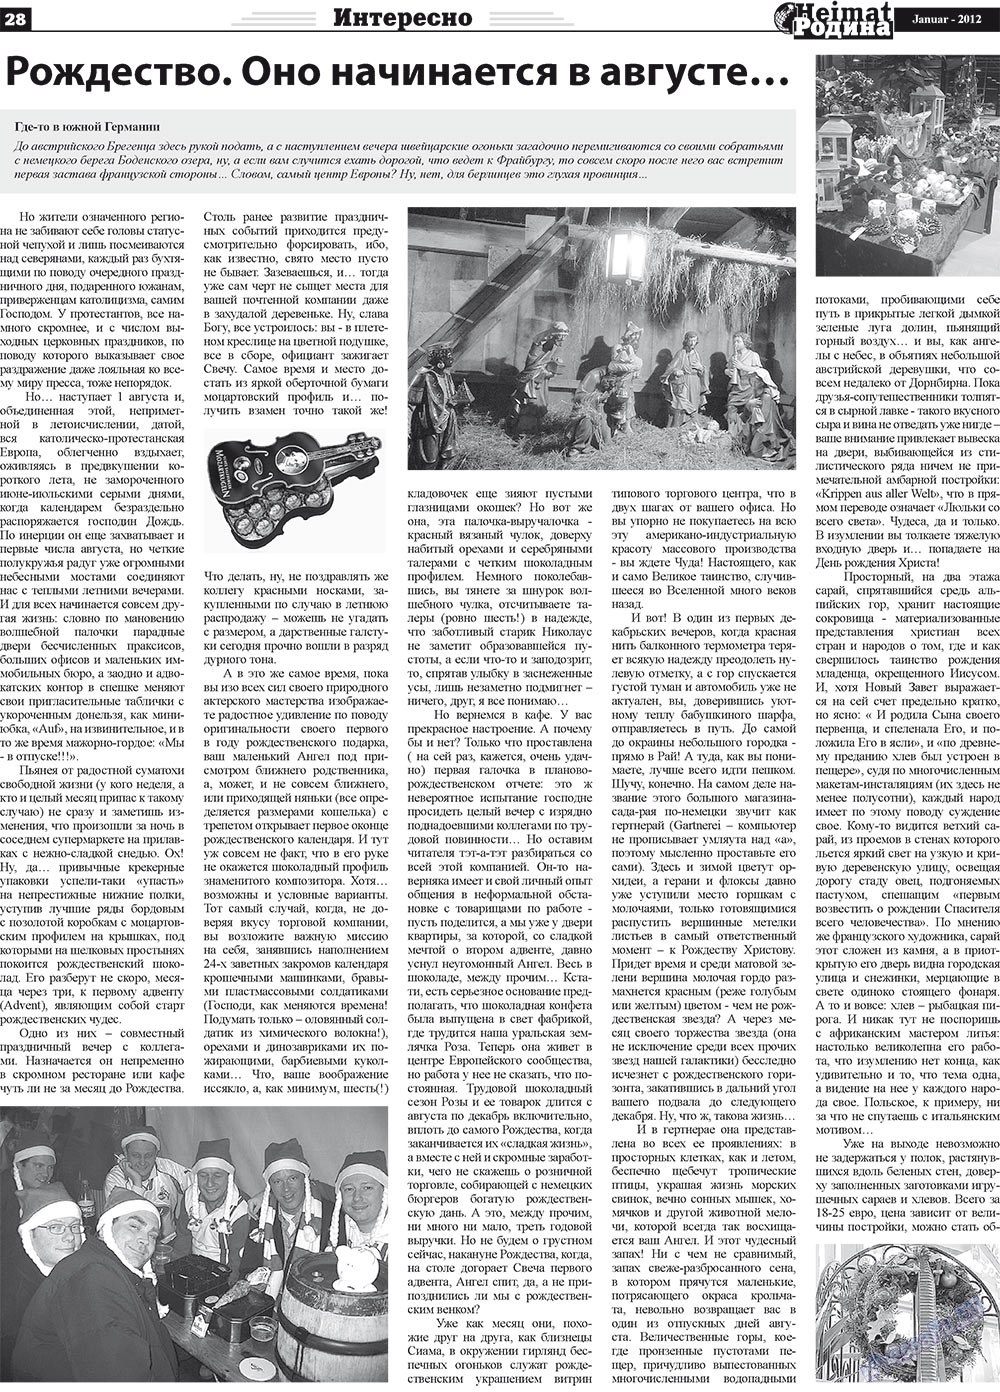 Heimat-Родина (газета). 2012 год, номер 1, стр. 28